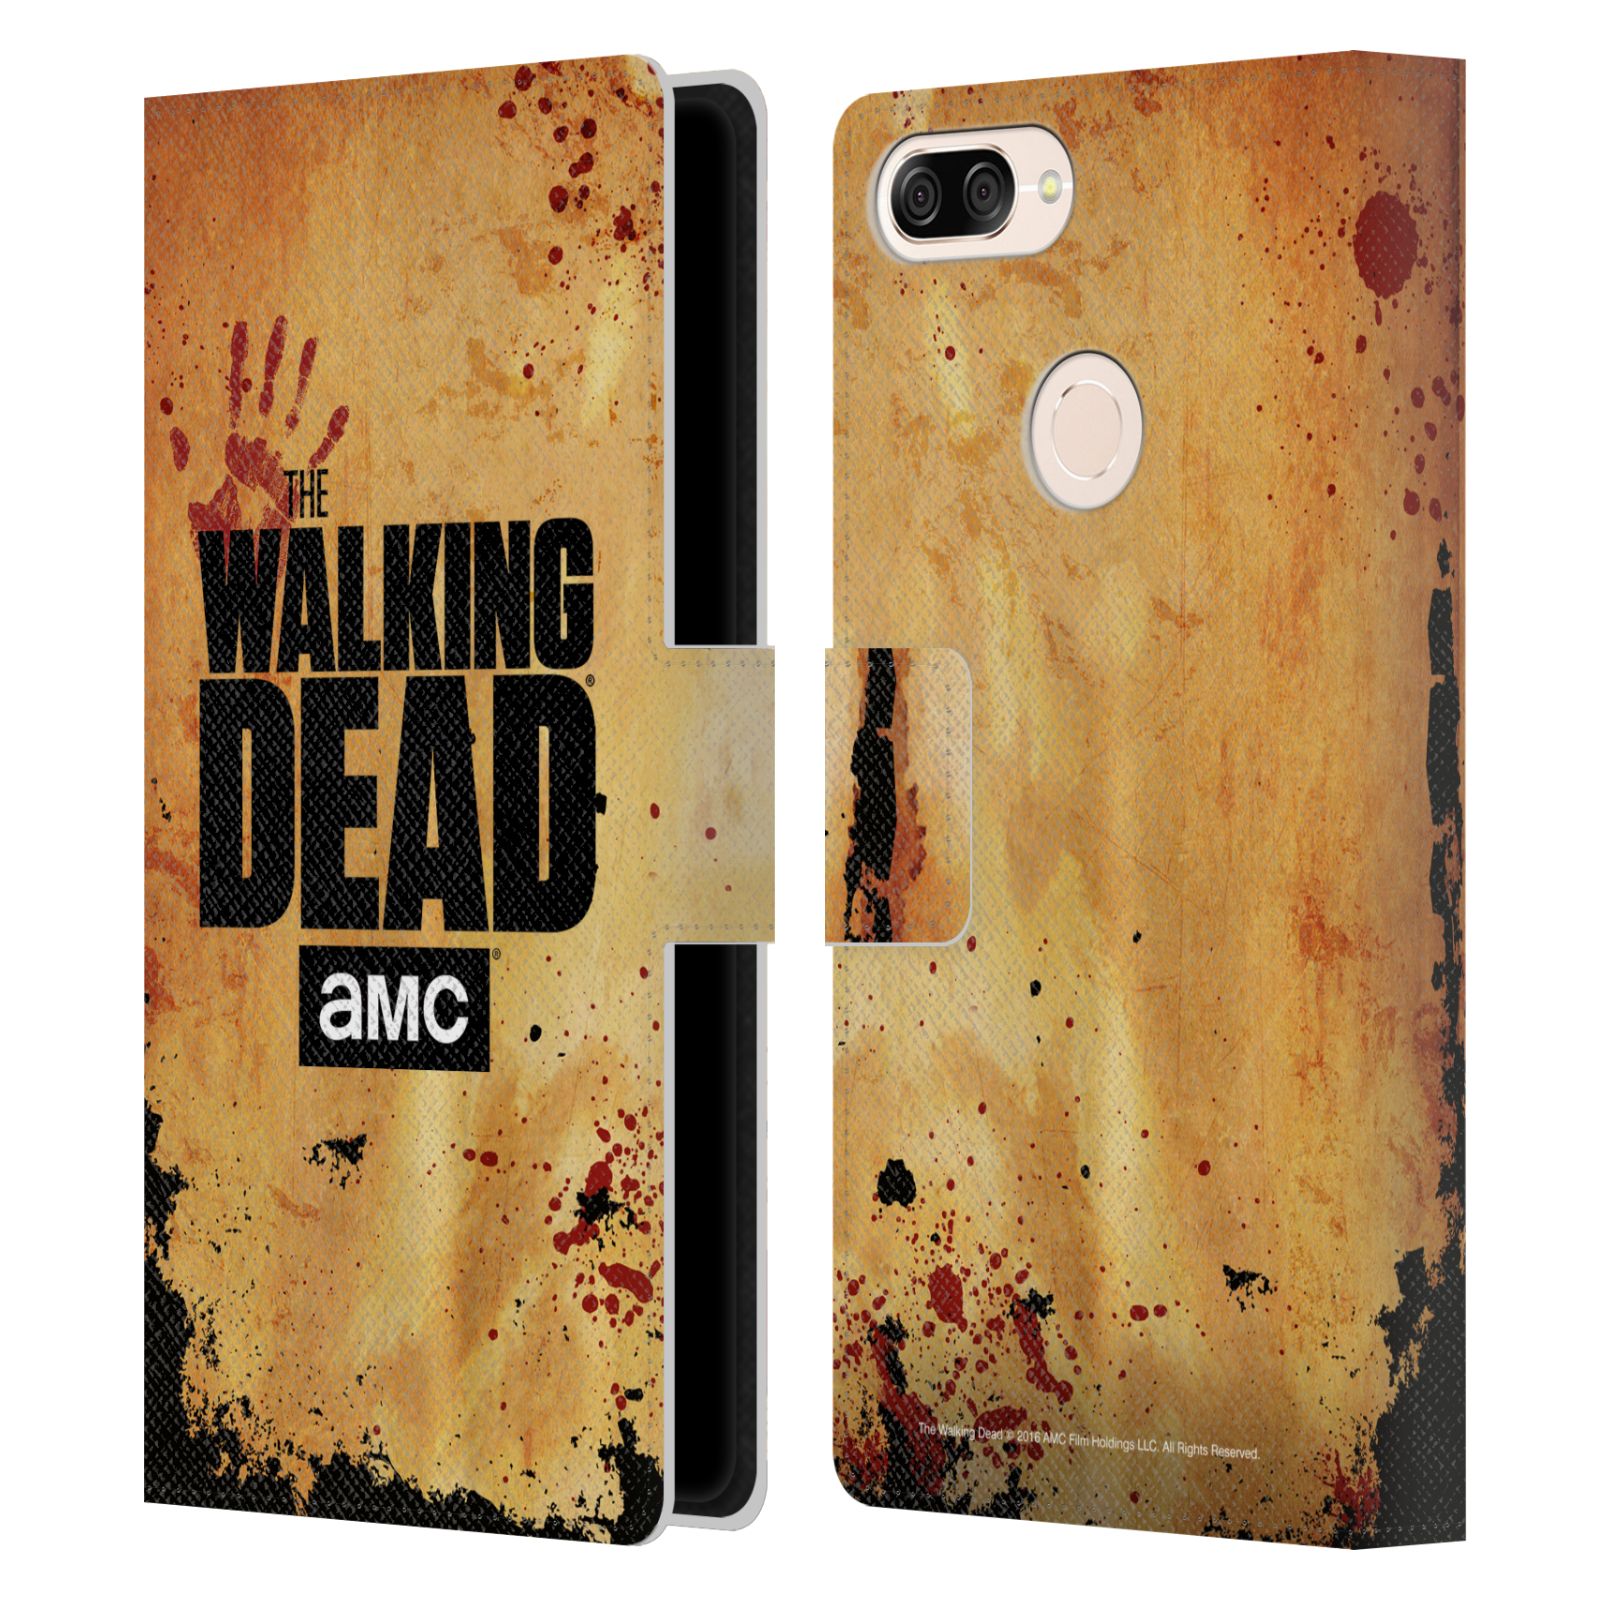 Pouzdro na mobil Asus Zenfone Max Plus (M1) ZB570TL - Head Case - Walking Dead logo krvavá ruka